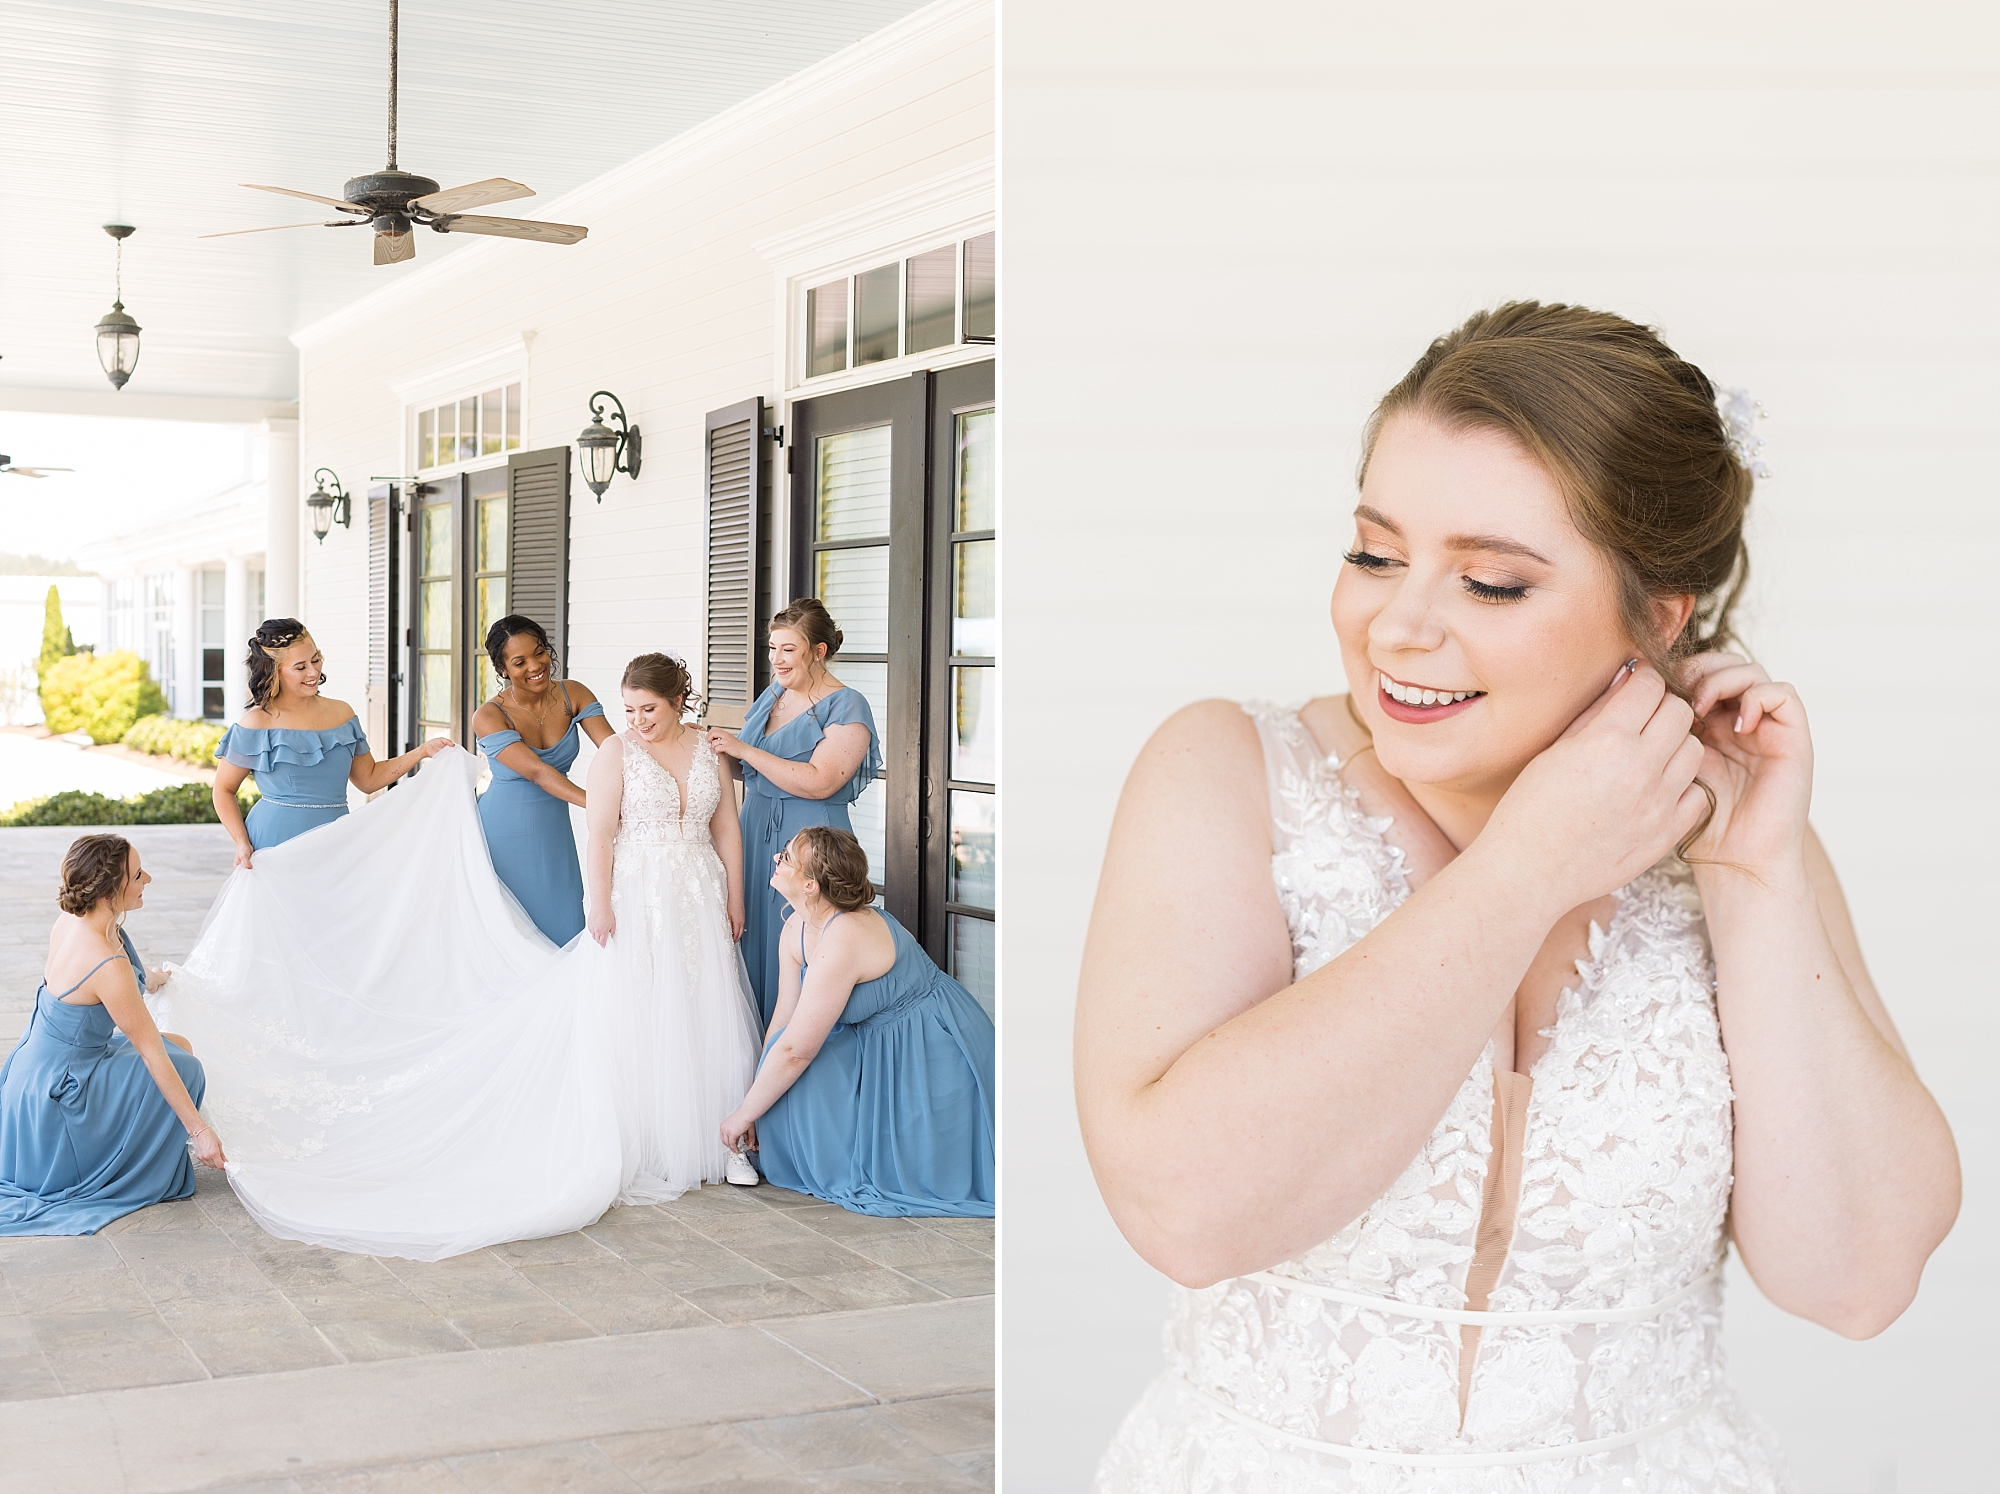 Bridesmaids helping bride get ready - Raleigh NC Wedding Photographer - Sarah Hinckley Photography